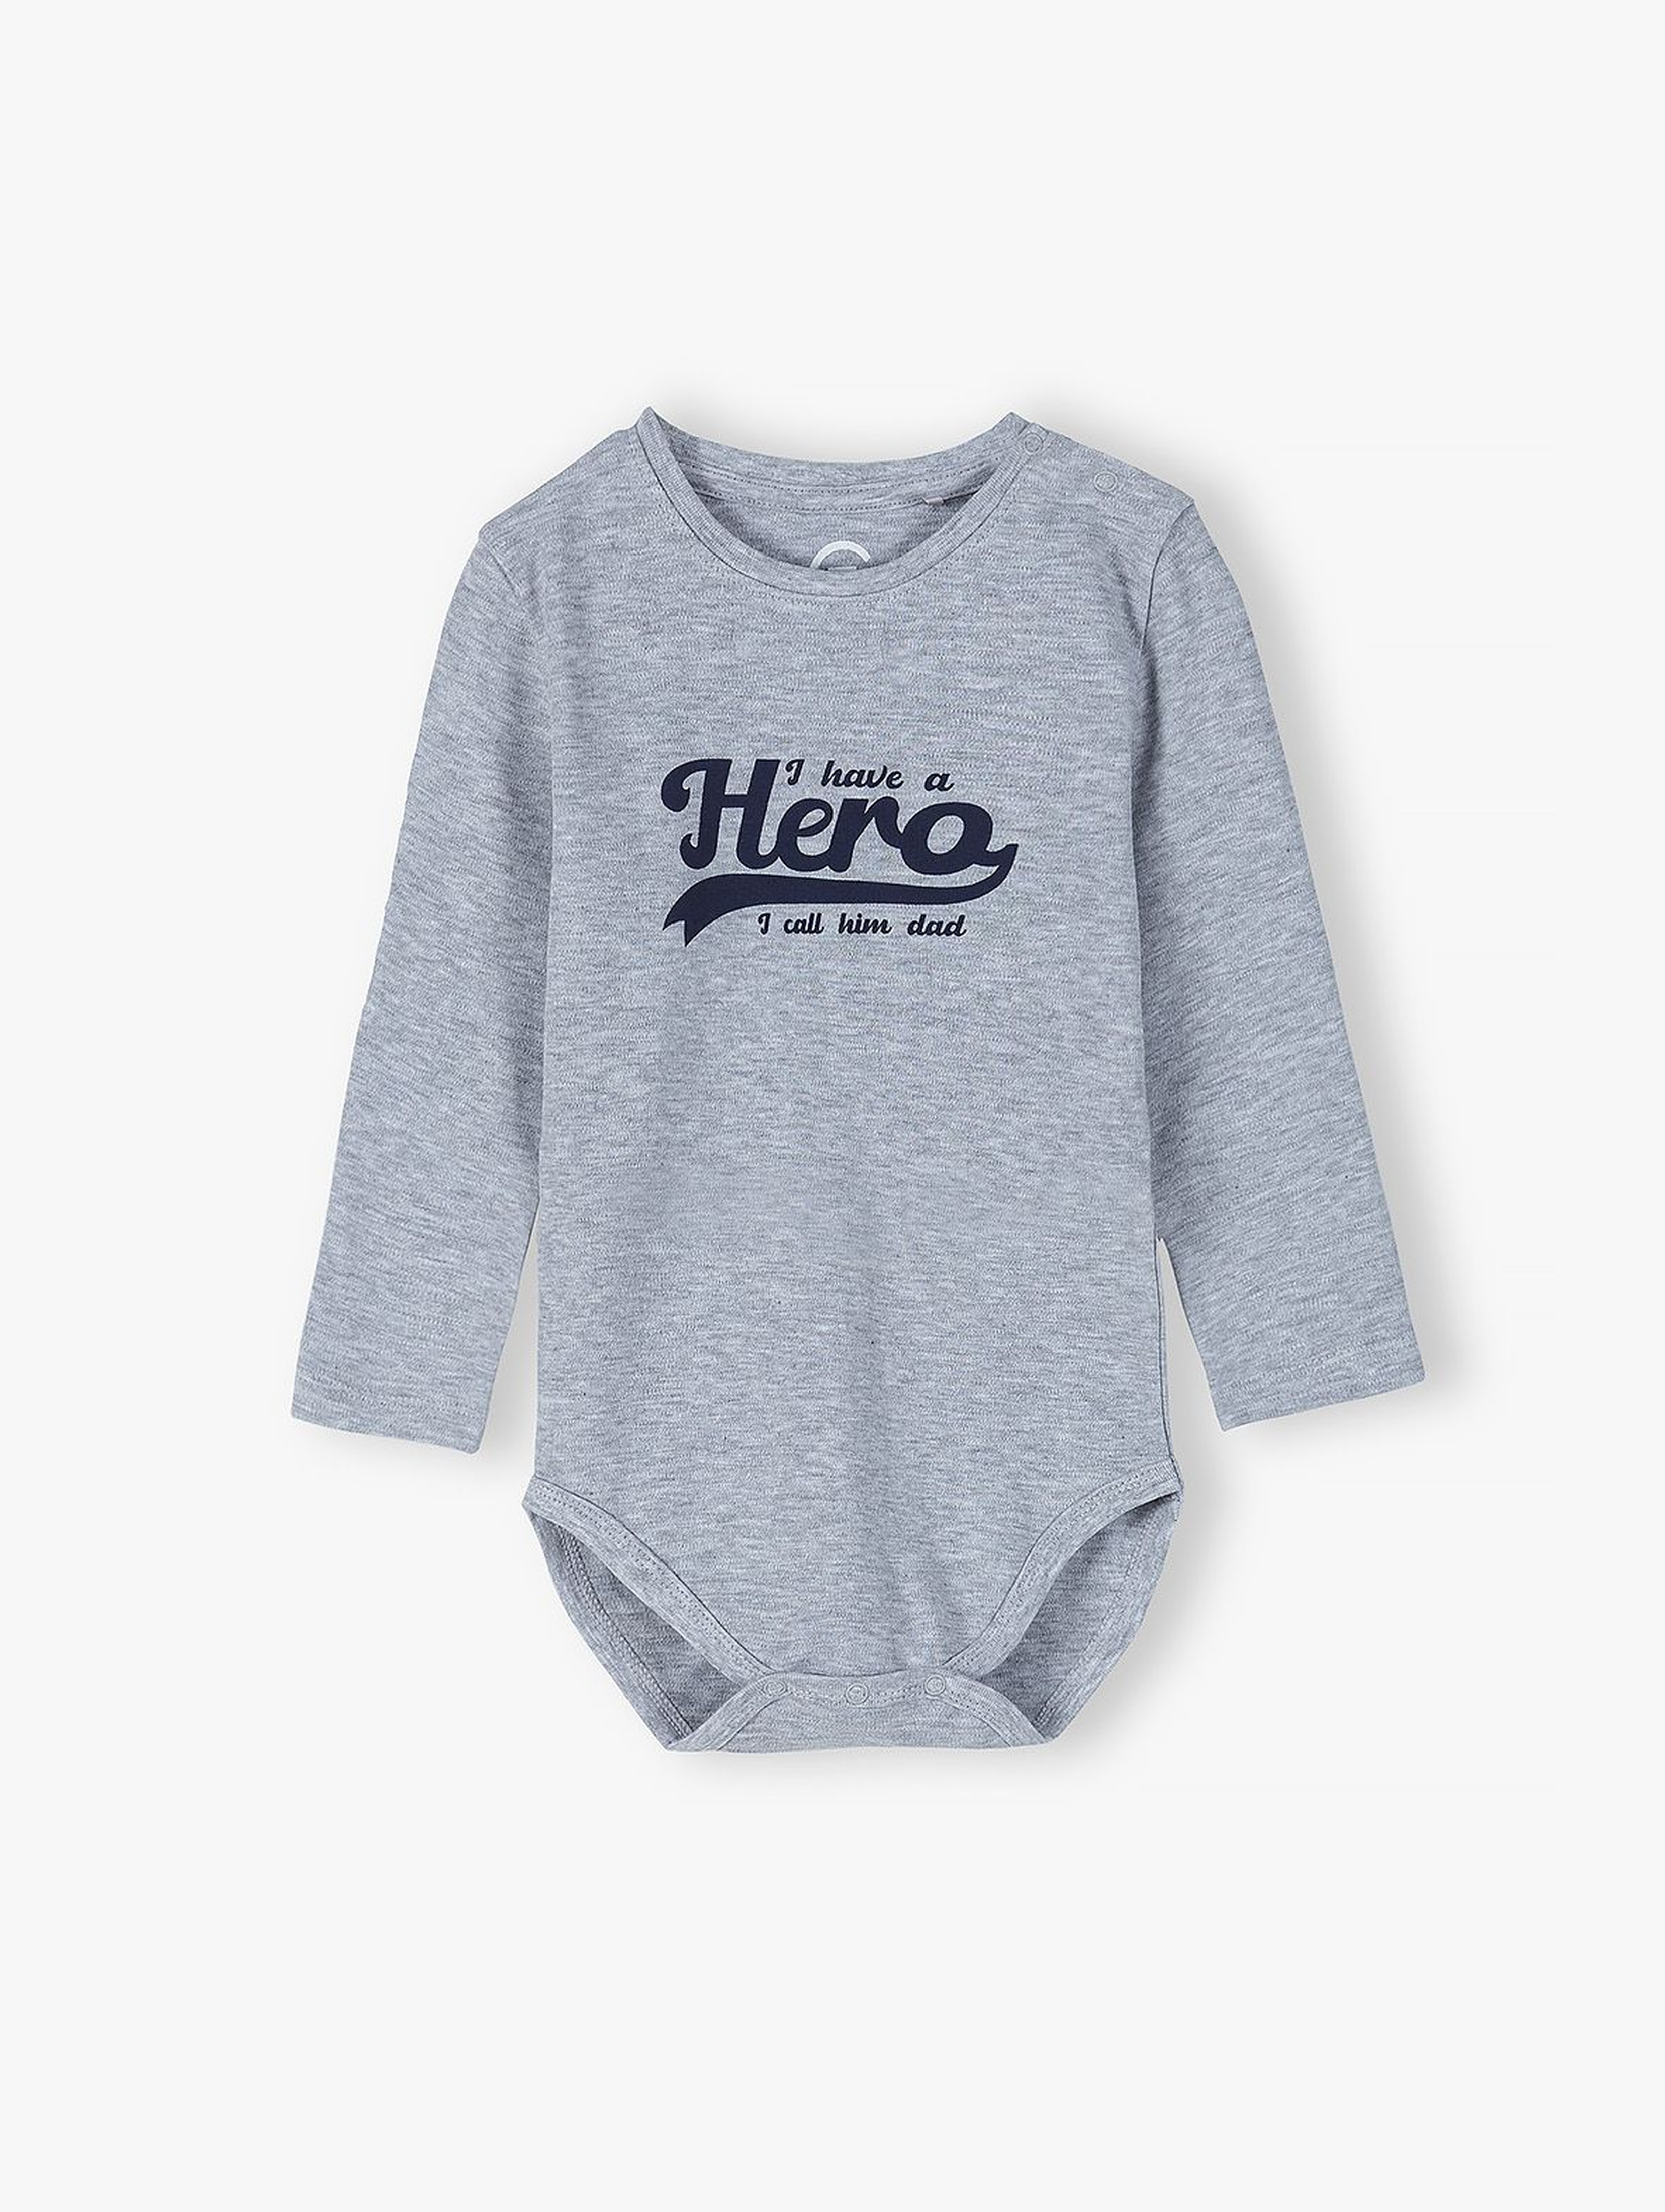 Body niemowlęce szare z napisem -Hero - kolekcja ubrań dla całej rodziny